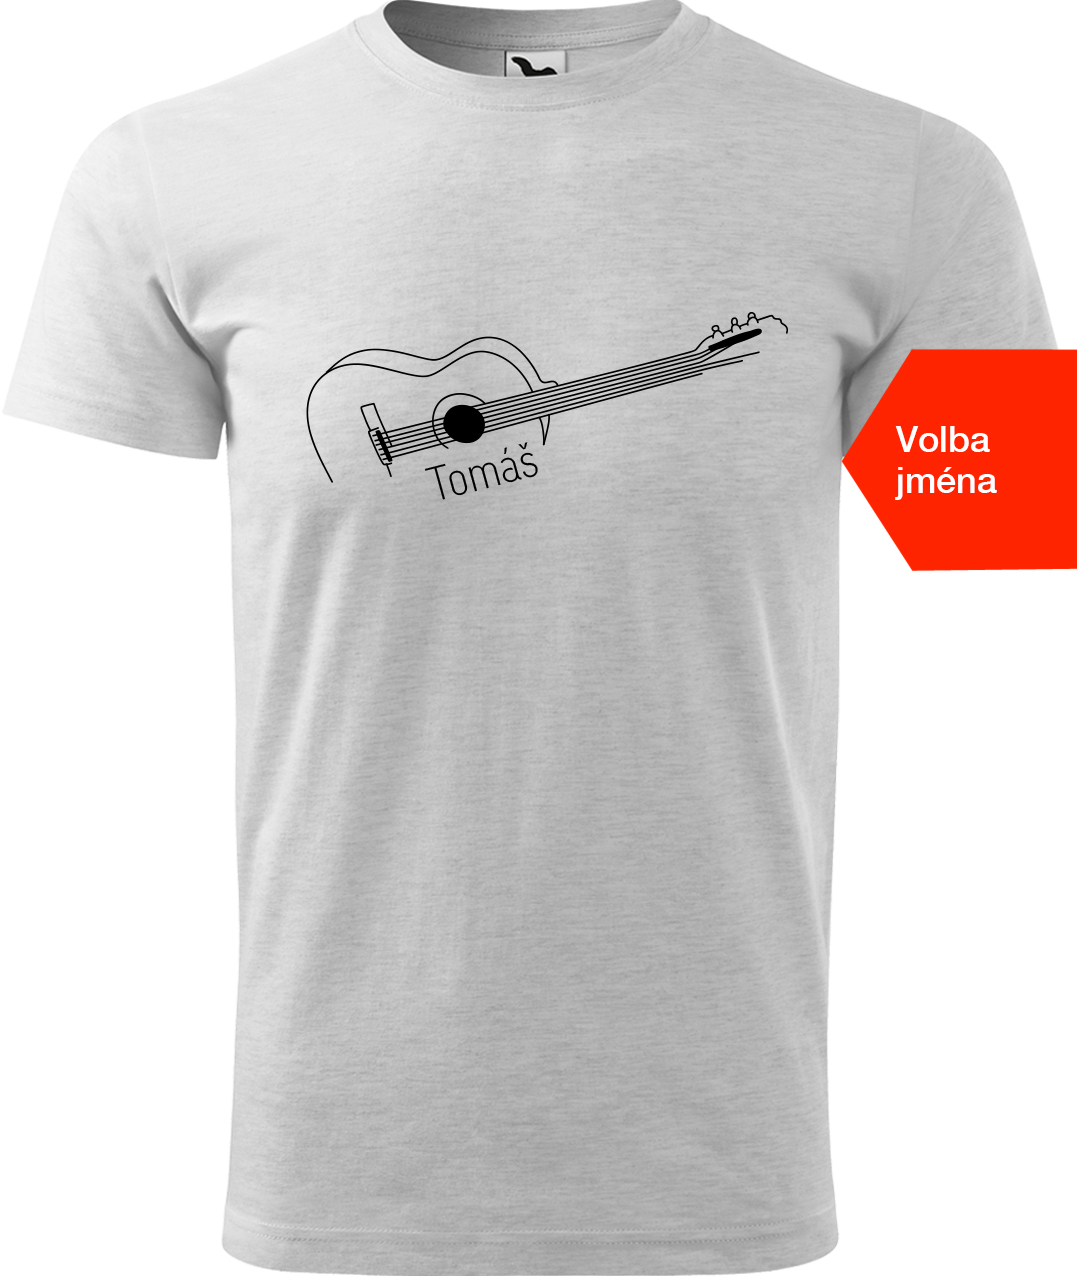 Pánské tričko s kytarou se jménem - Stylizovaná kytara Velikost: M, Barva: Světle šedý melír (03), Střih: pánský